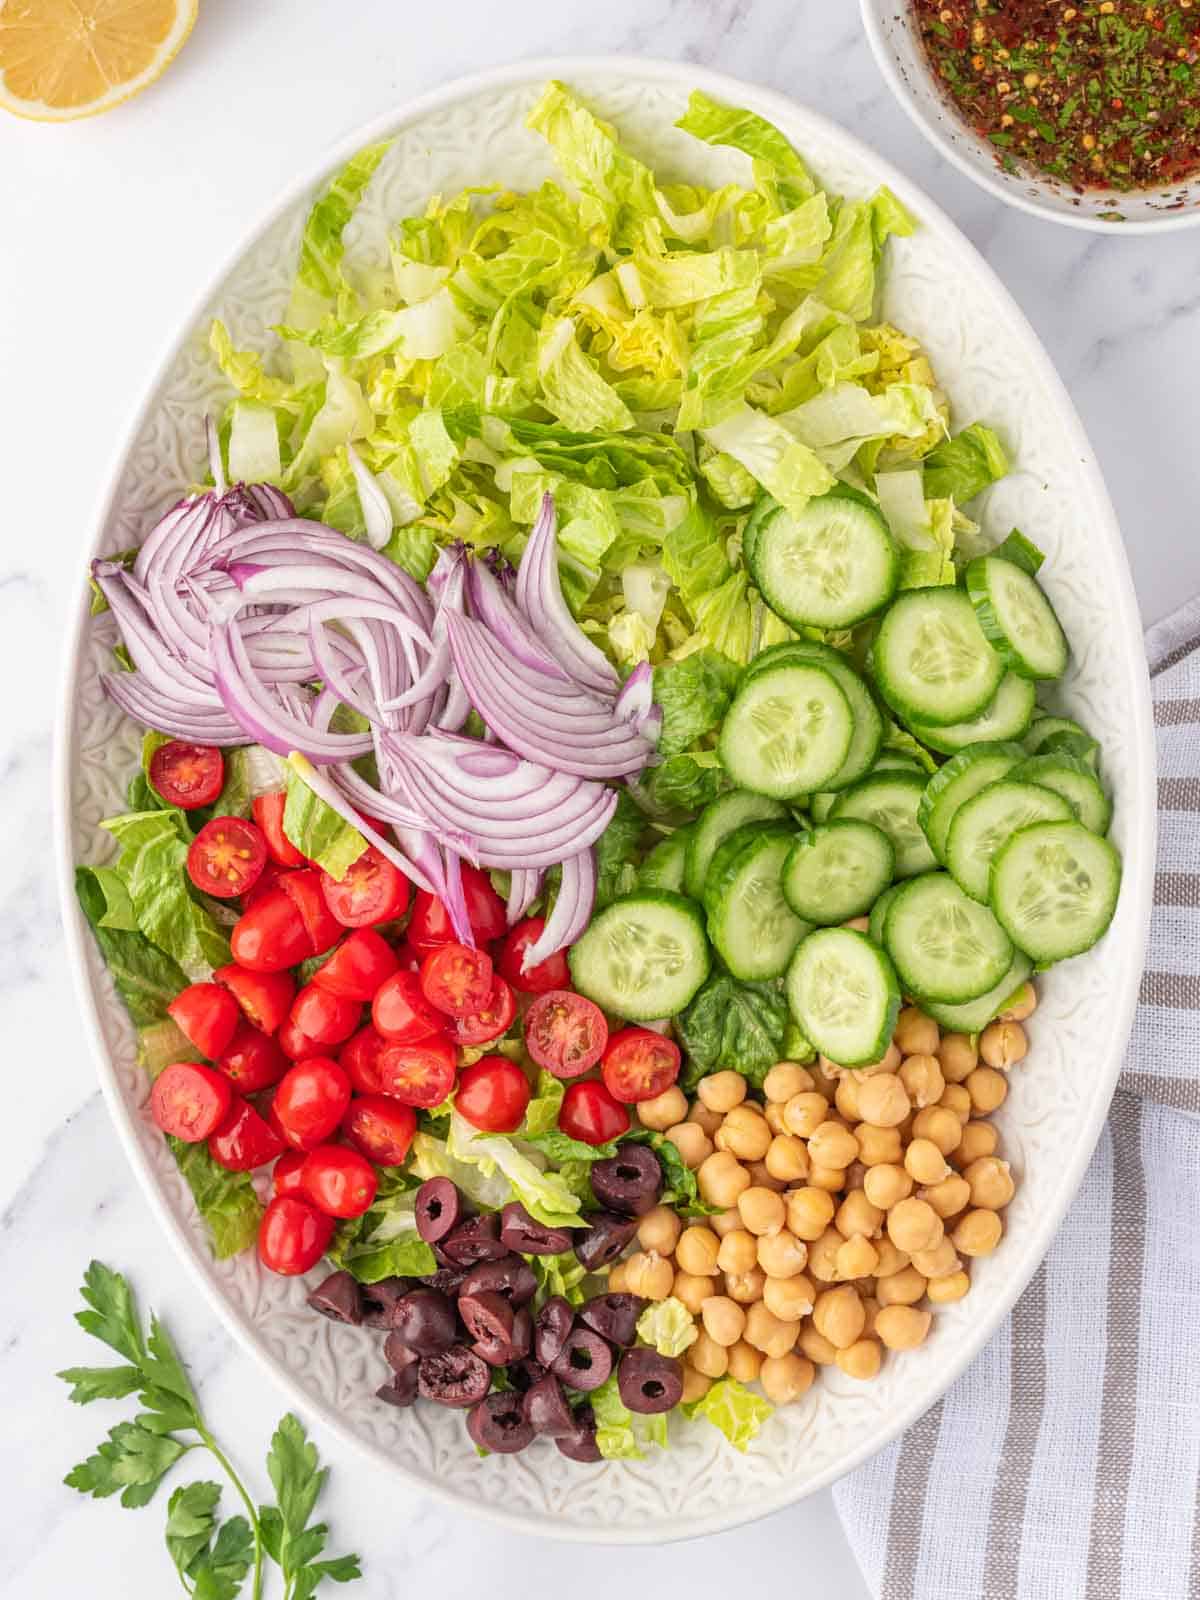 Vegetables for a mediterranean salad.